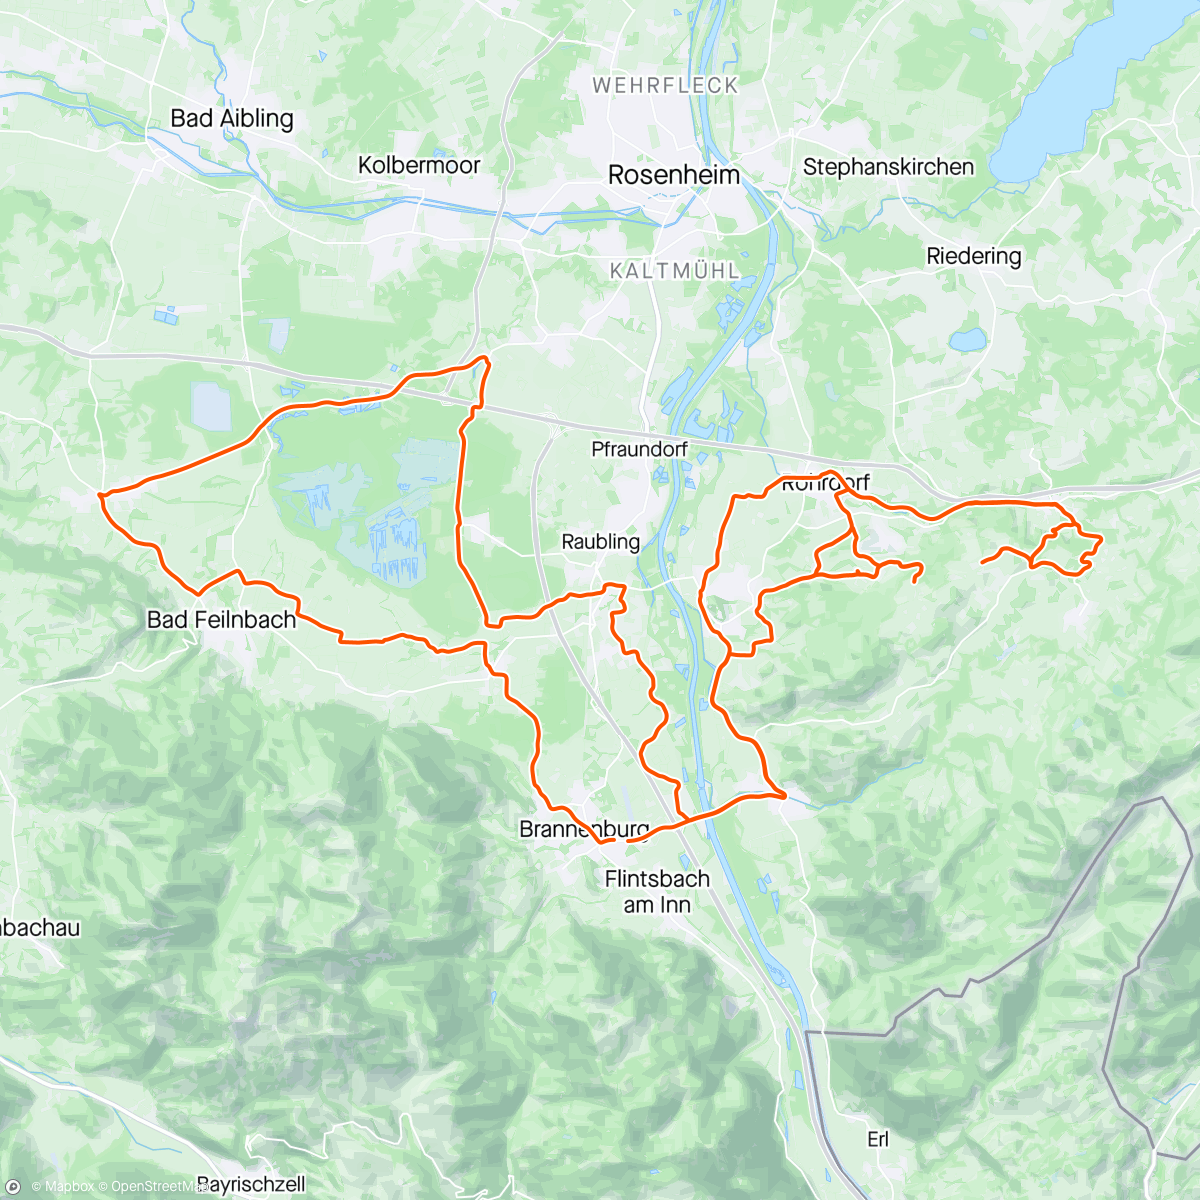 アクティビティ「Mountainbike-Fahrt zur Mittagszeit」の地図